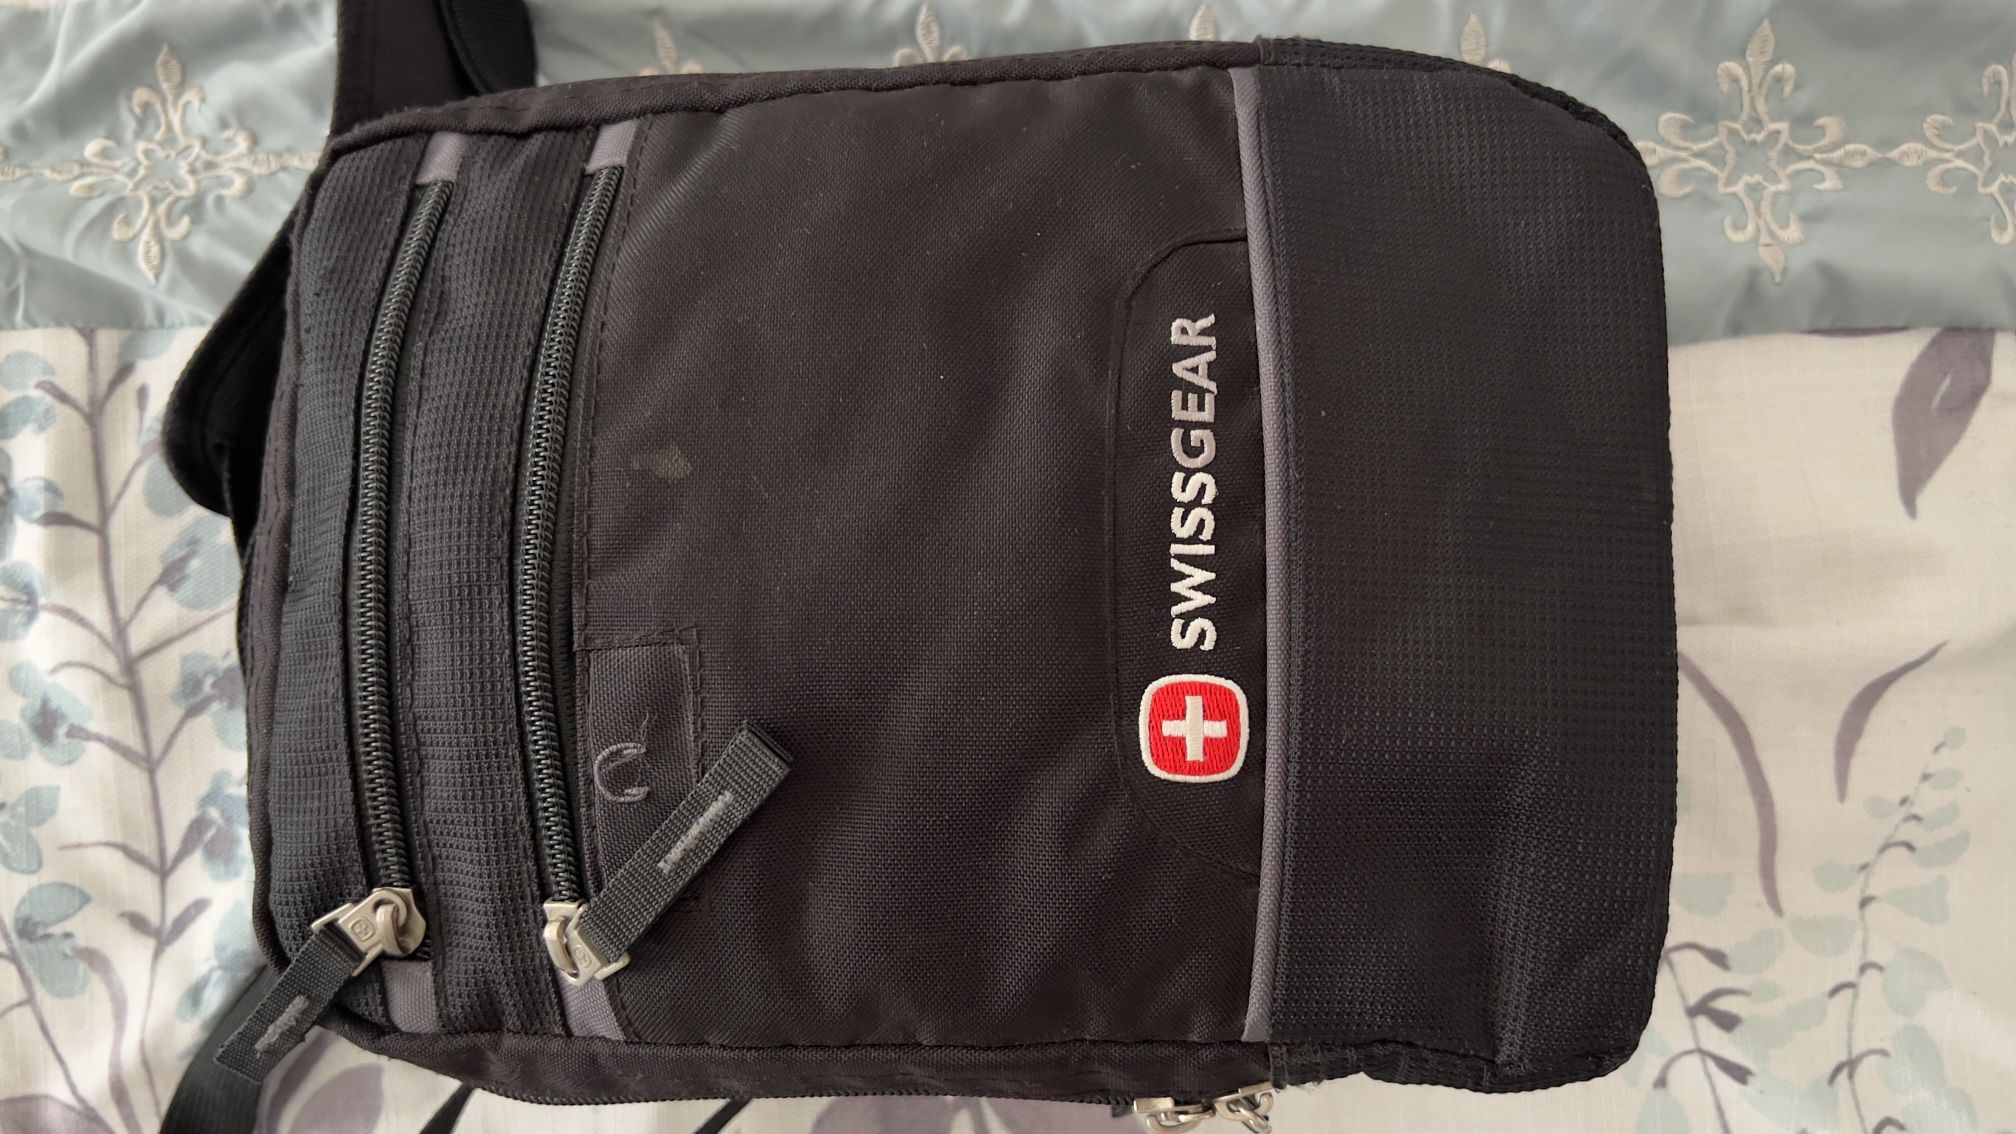 Swiss gear backpack